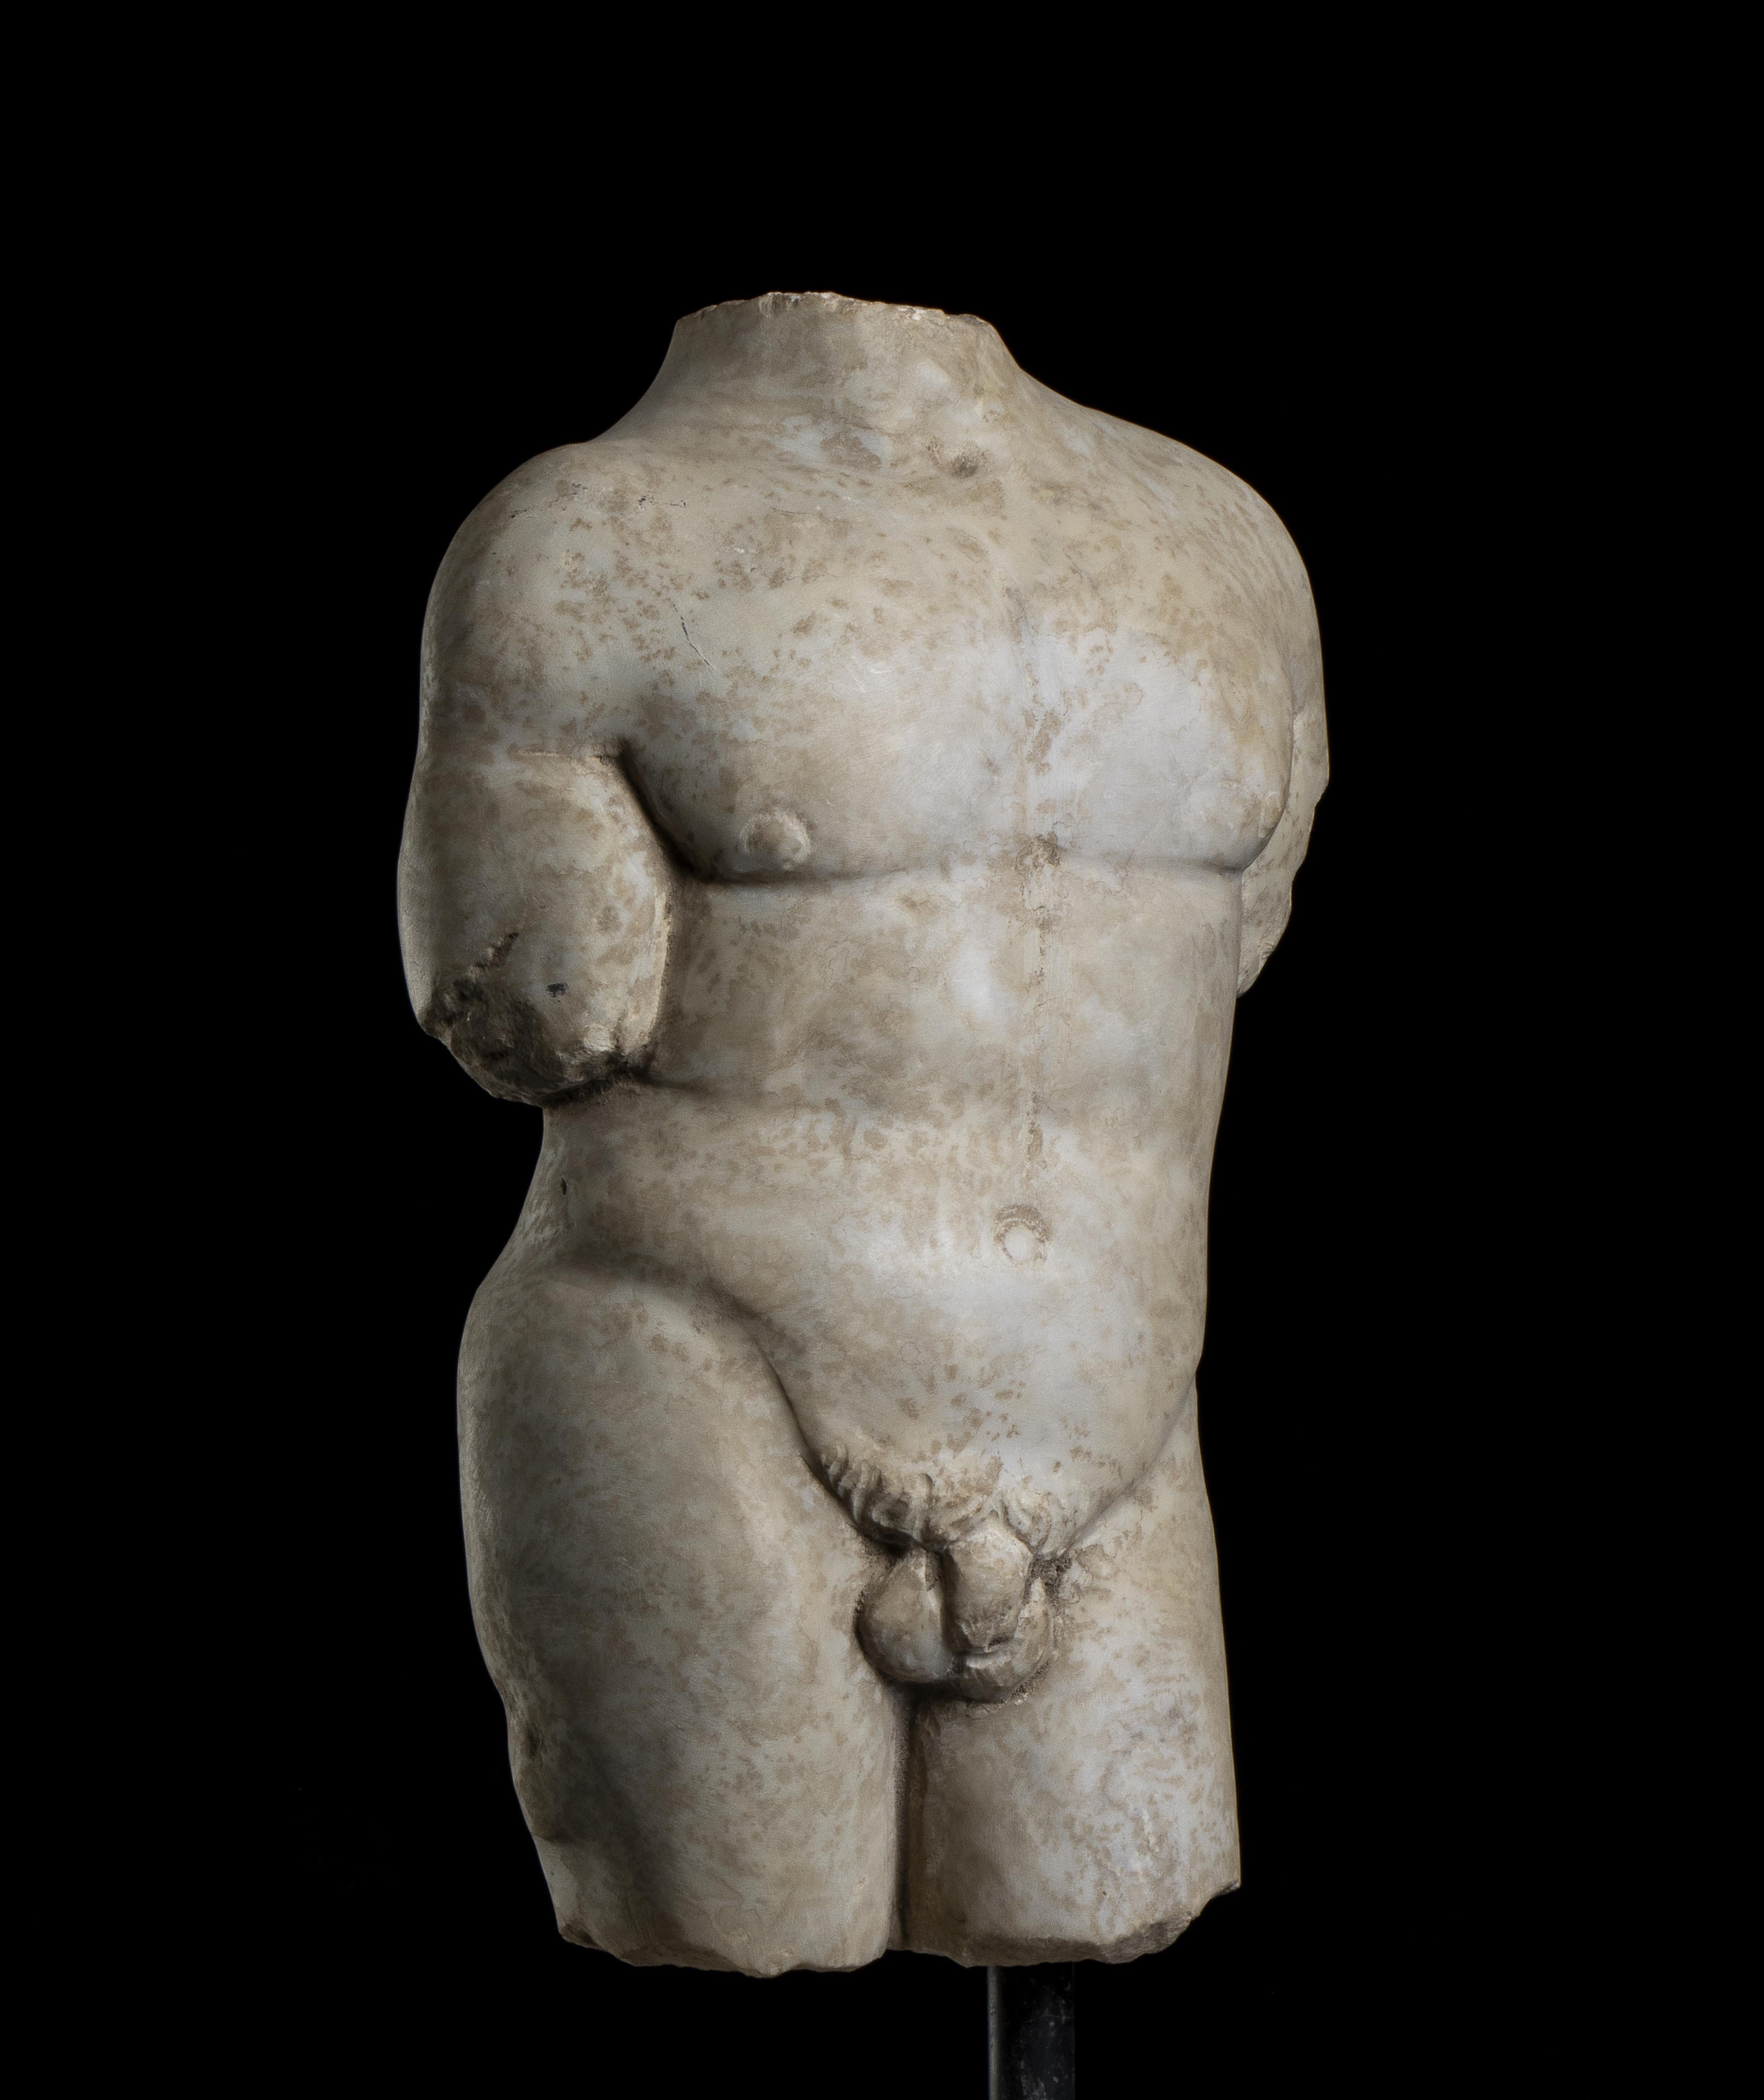 Eine gealterte statuarische klassische griechisch-römische Marmor-Torso-Skulptur eines Athleten, Grand Tour Stil Mittelitalien Anfang des 20. Jahrhunderts.
Die  nackter Körper des Athleten, der auf dem rechten Bein steht, während das linke in